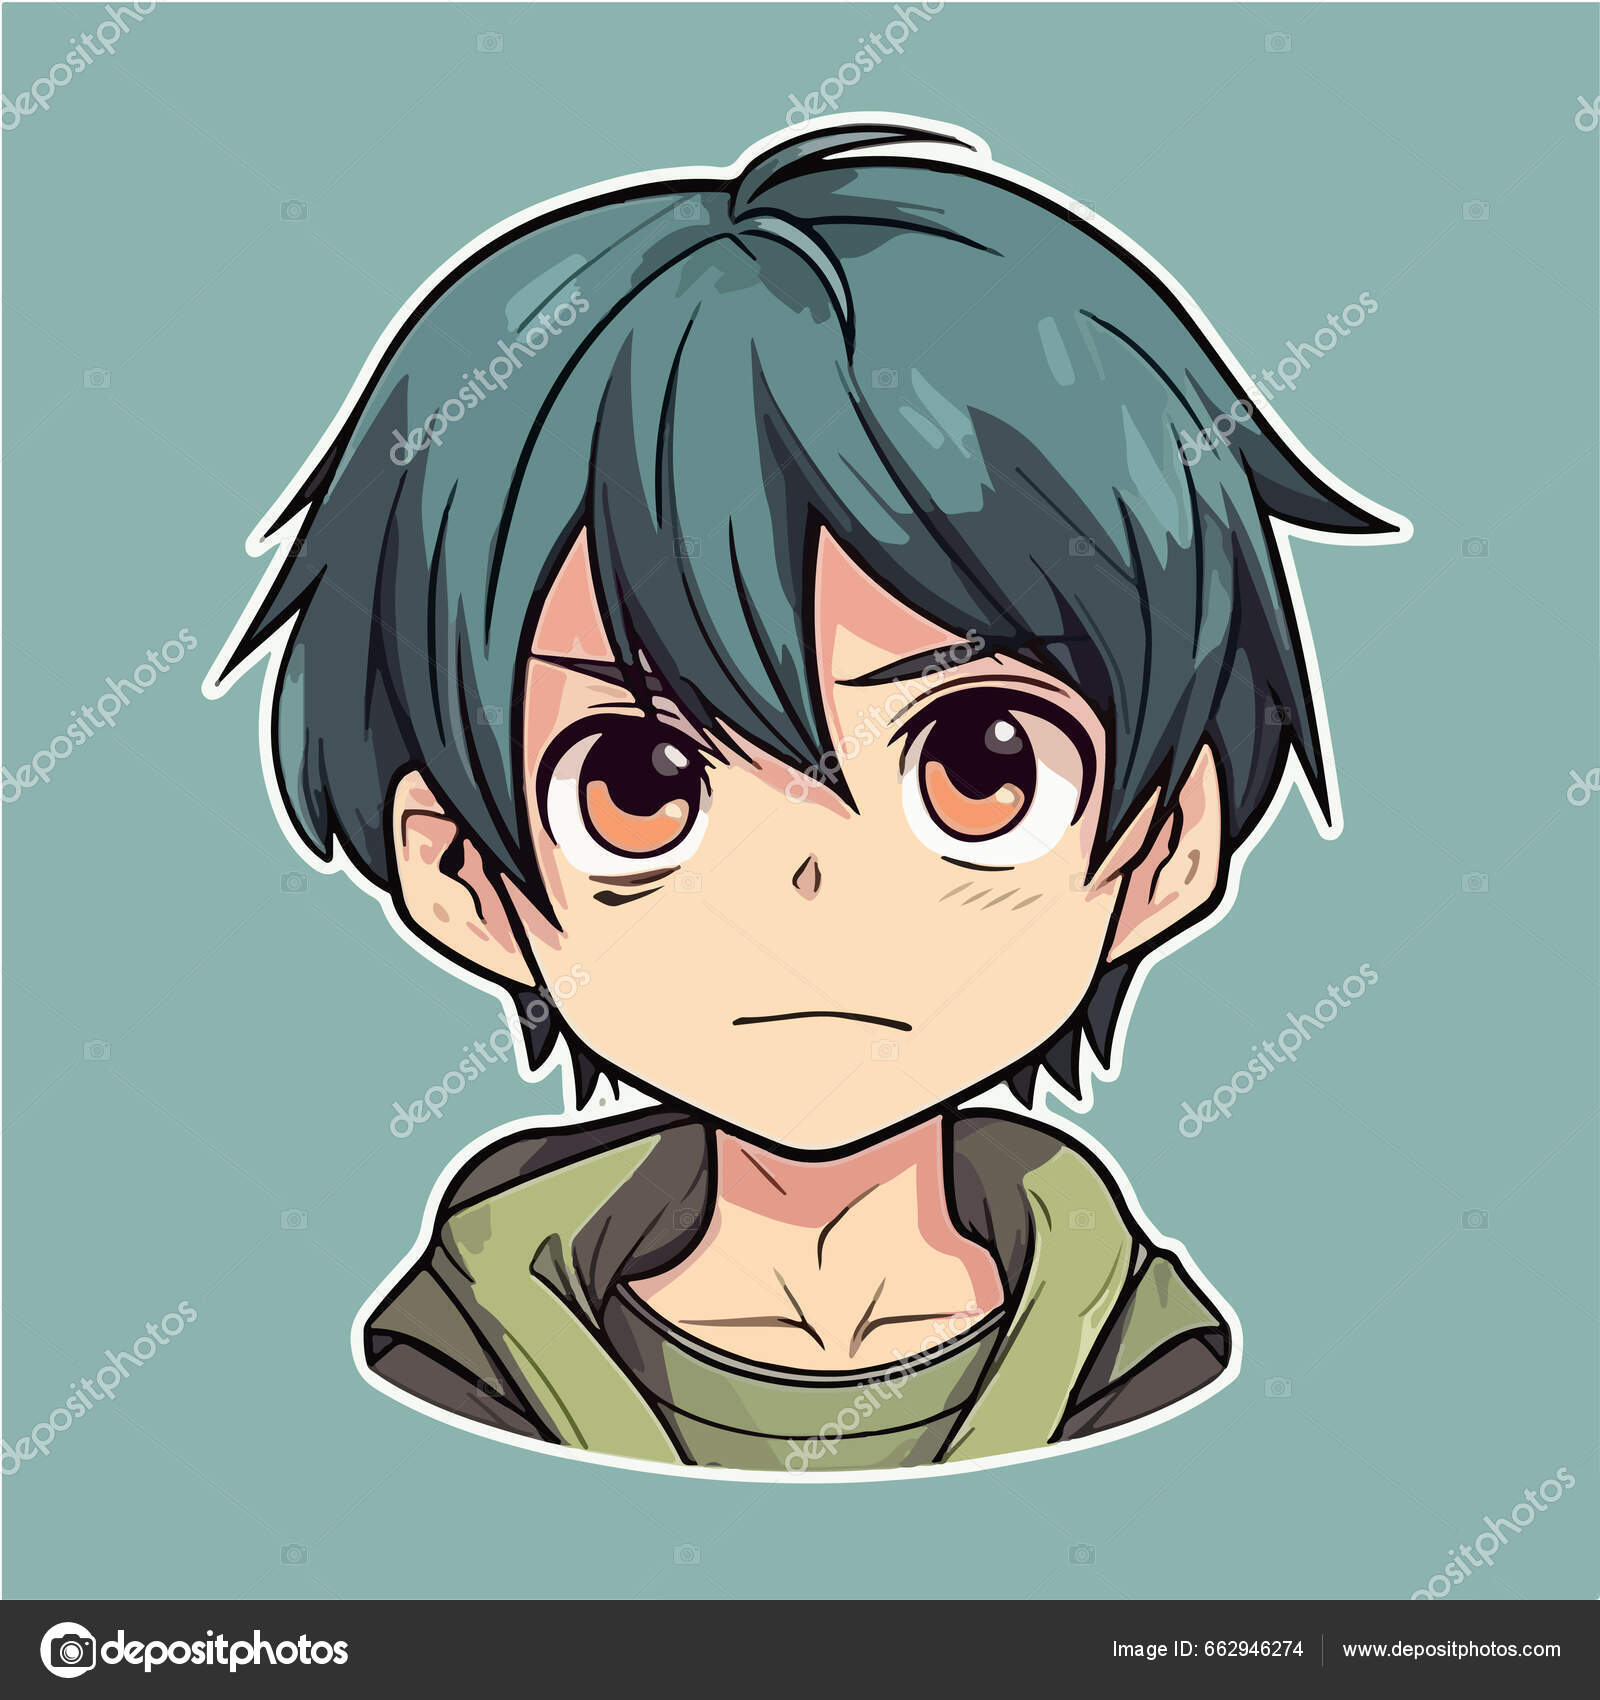 Guy anime avatar stock vector. Illustration of design - 255501495